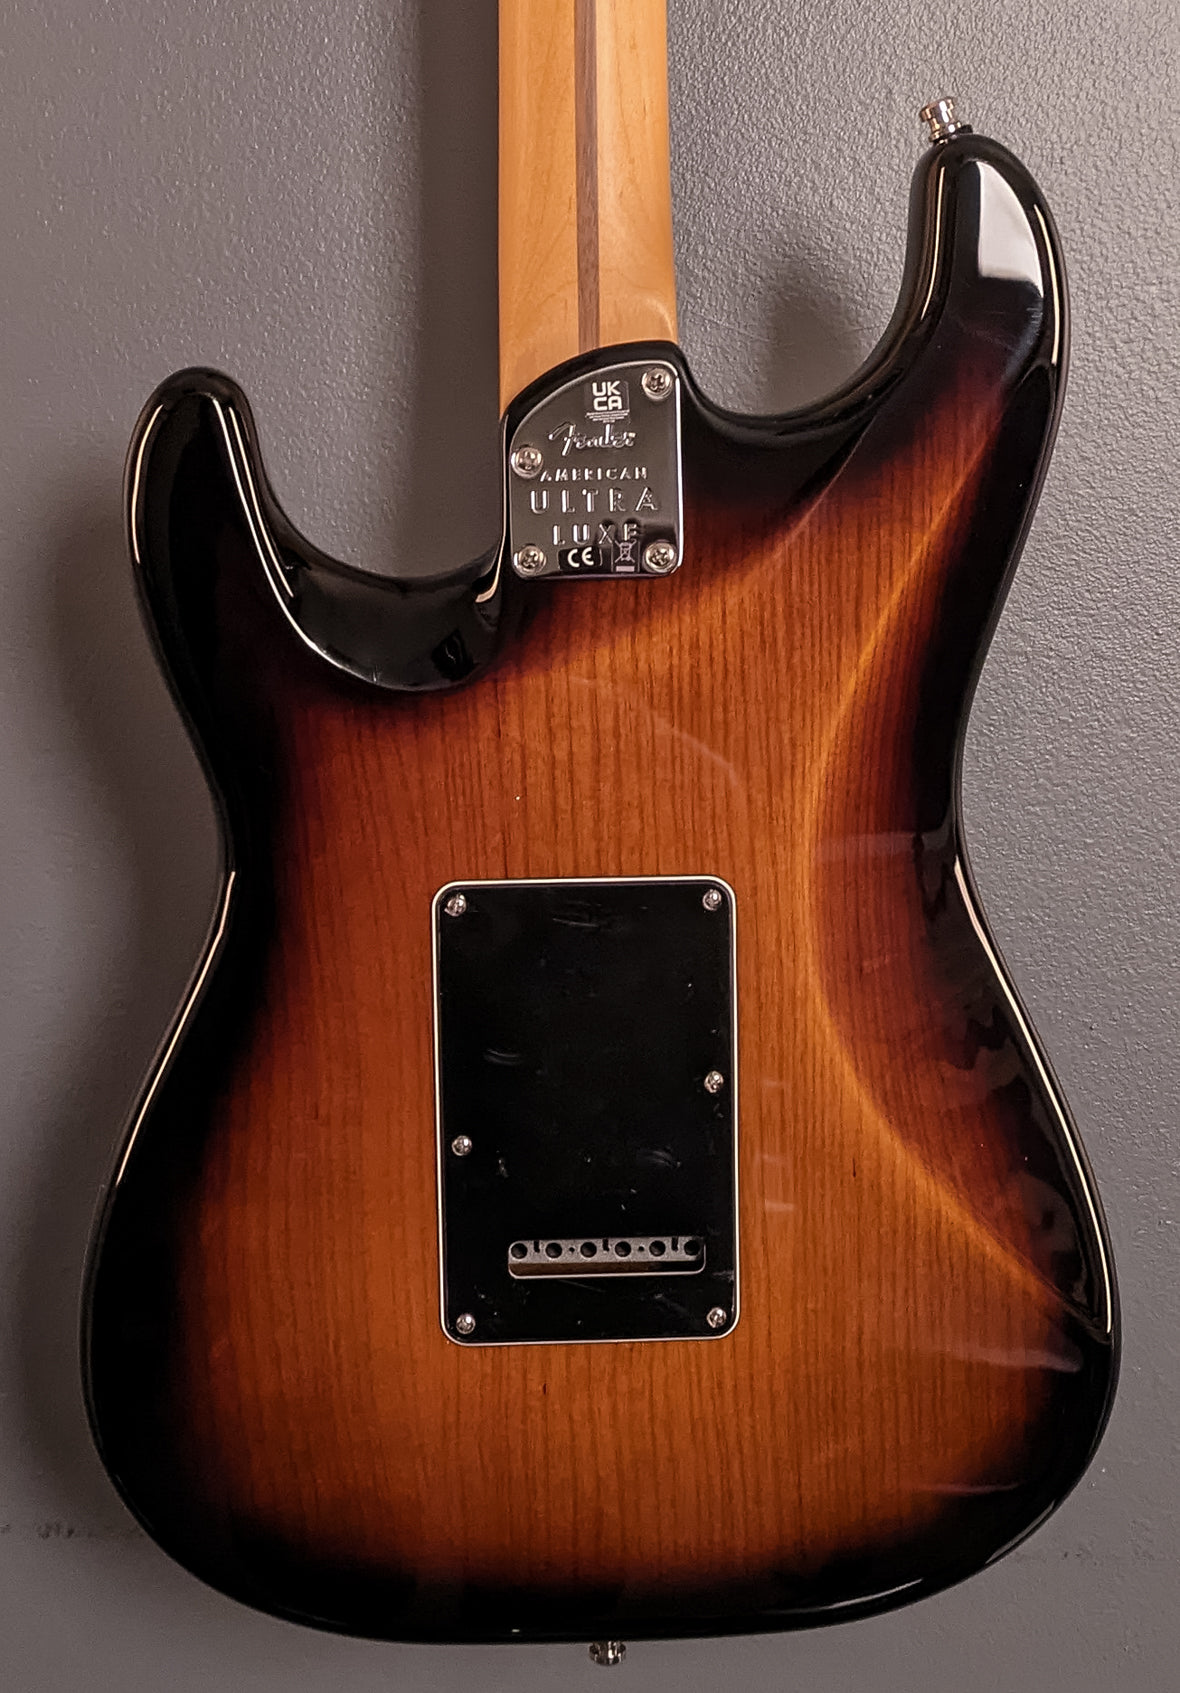 American Ultra Luxe Stratocaster - 2 Color Sunburst